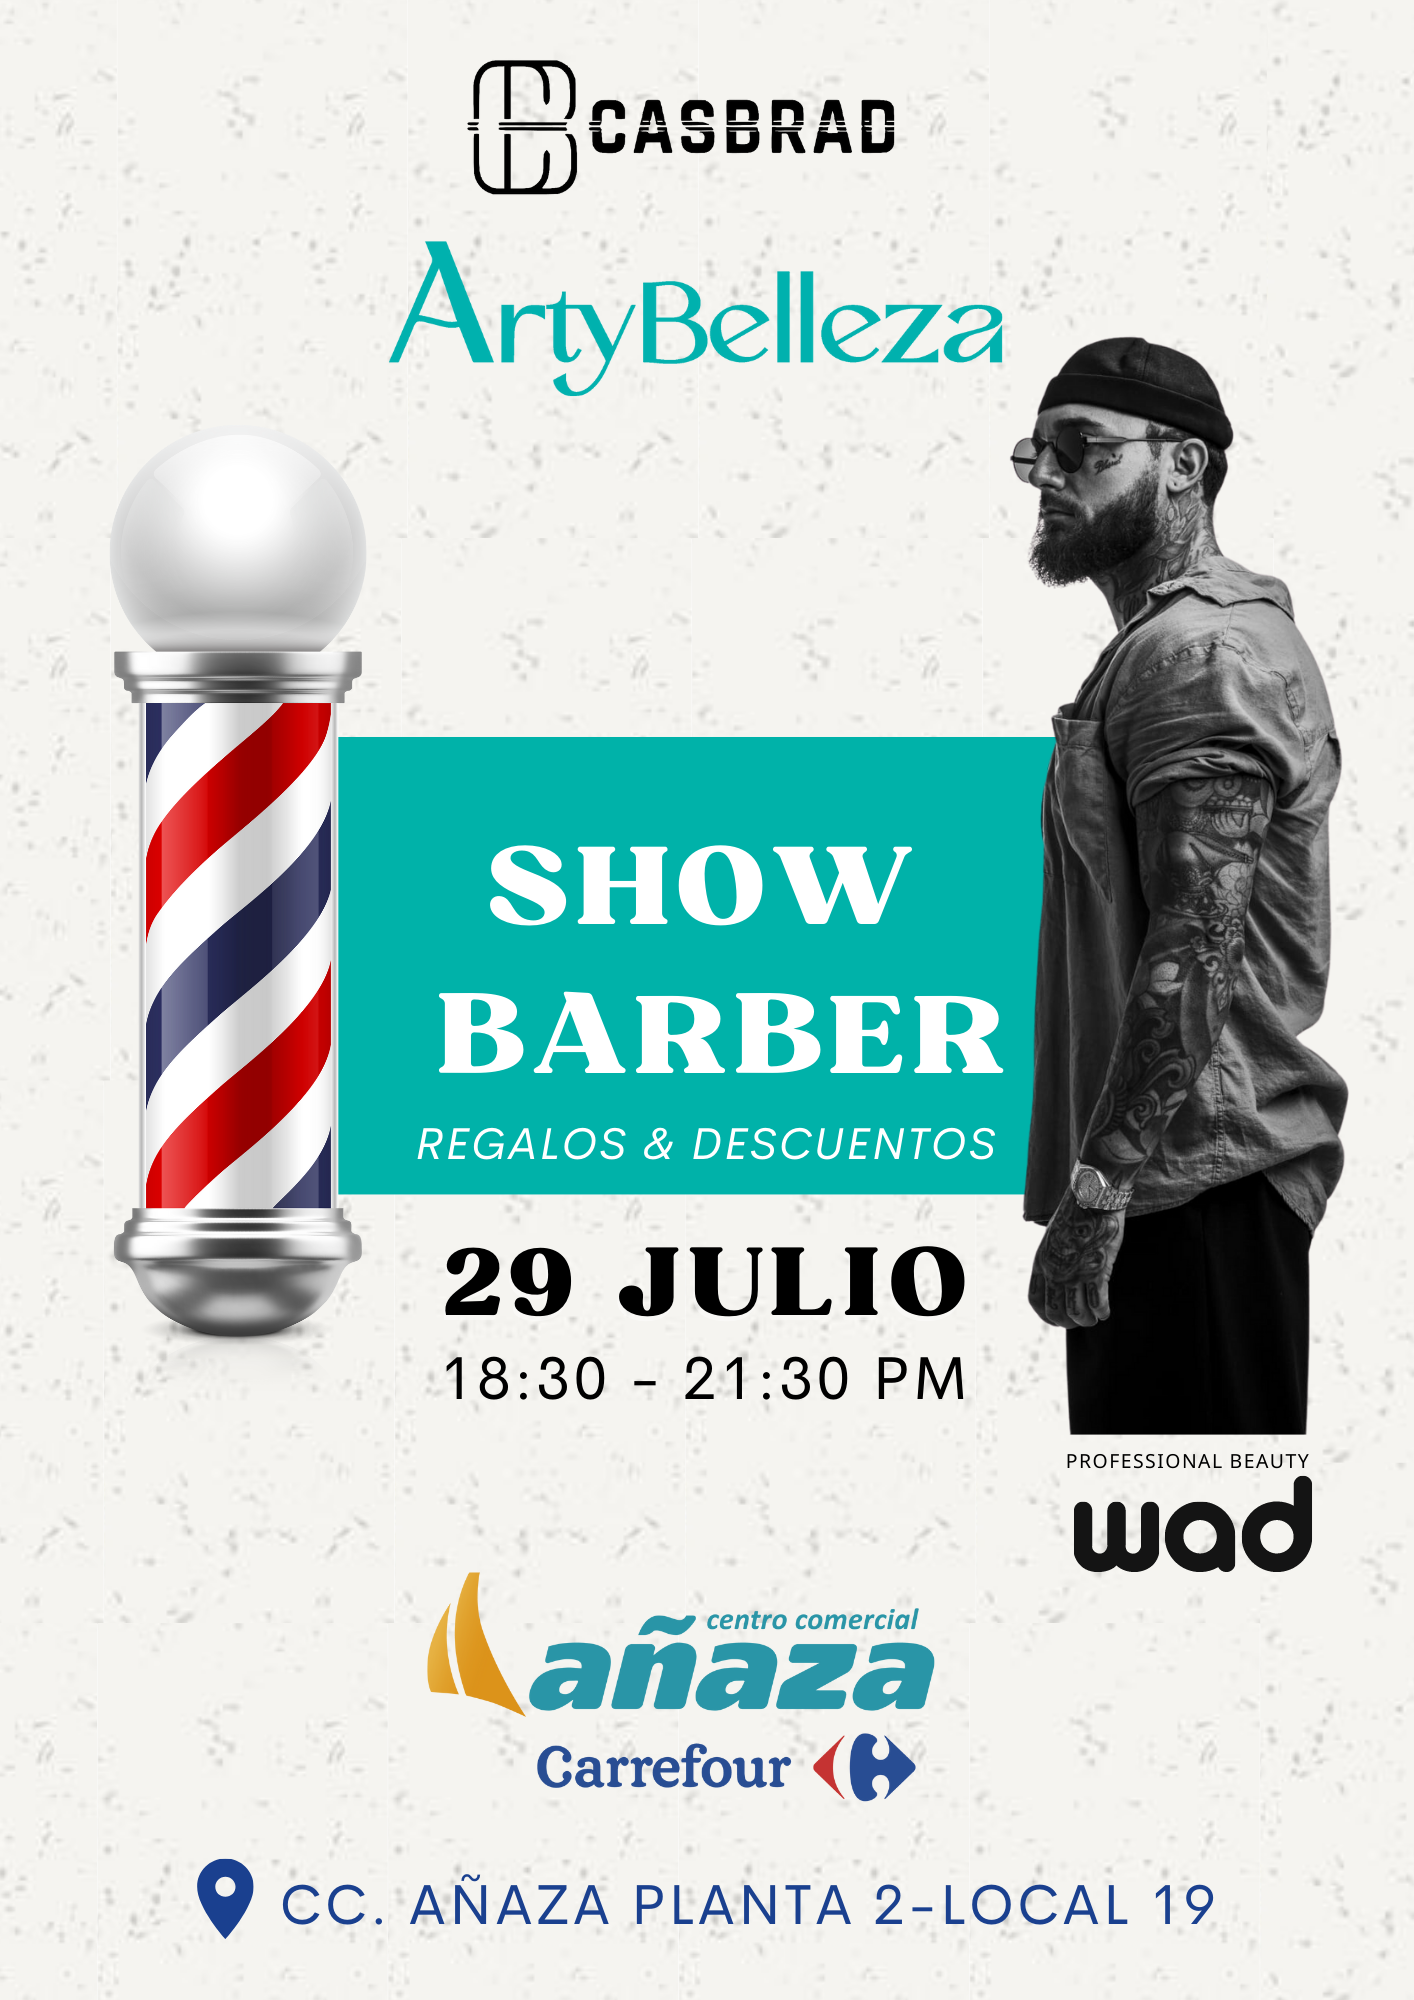 Arty Belleza junto al reconocido barbero Yeray Casquero brindarán un Show Barber exclusivo el próximo 29 de julio en su tienda del CC de Añaza, Tenerife. 